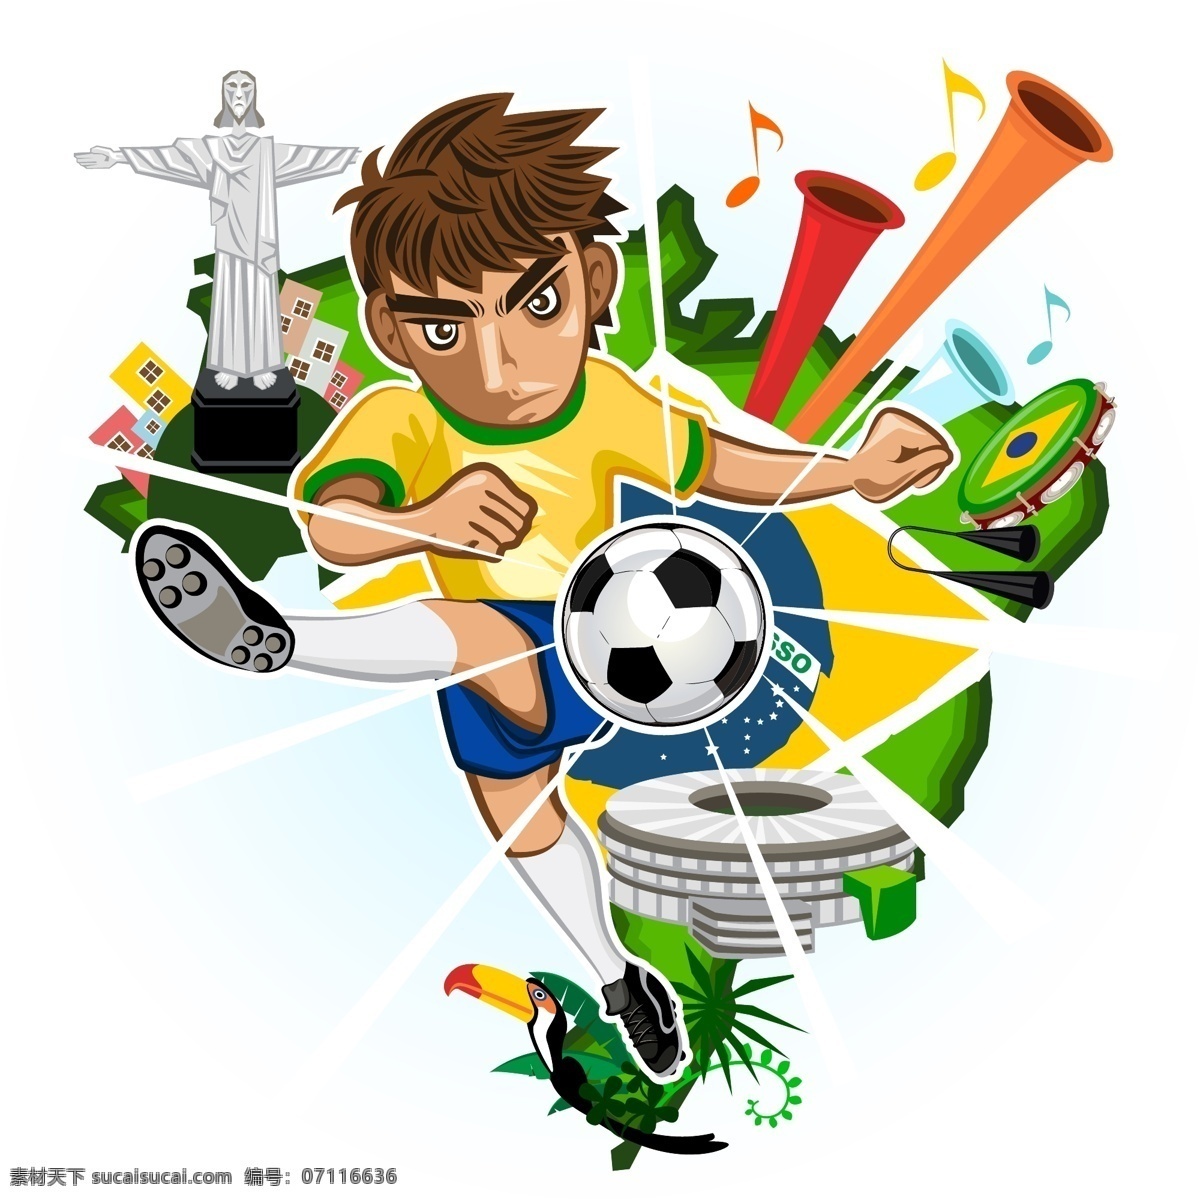 卡通 世界杯 海报 足球海报 足球比赛 足球背景 巴西世界杯 足球素材 足球运动 奥运会 手绘 矢量 体育运动 文化艺术 矢量素材